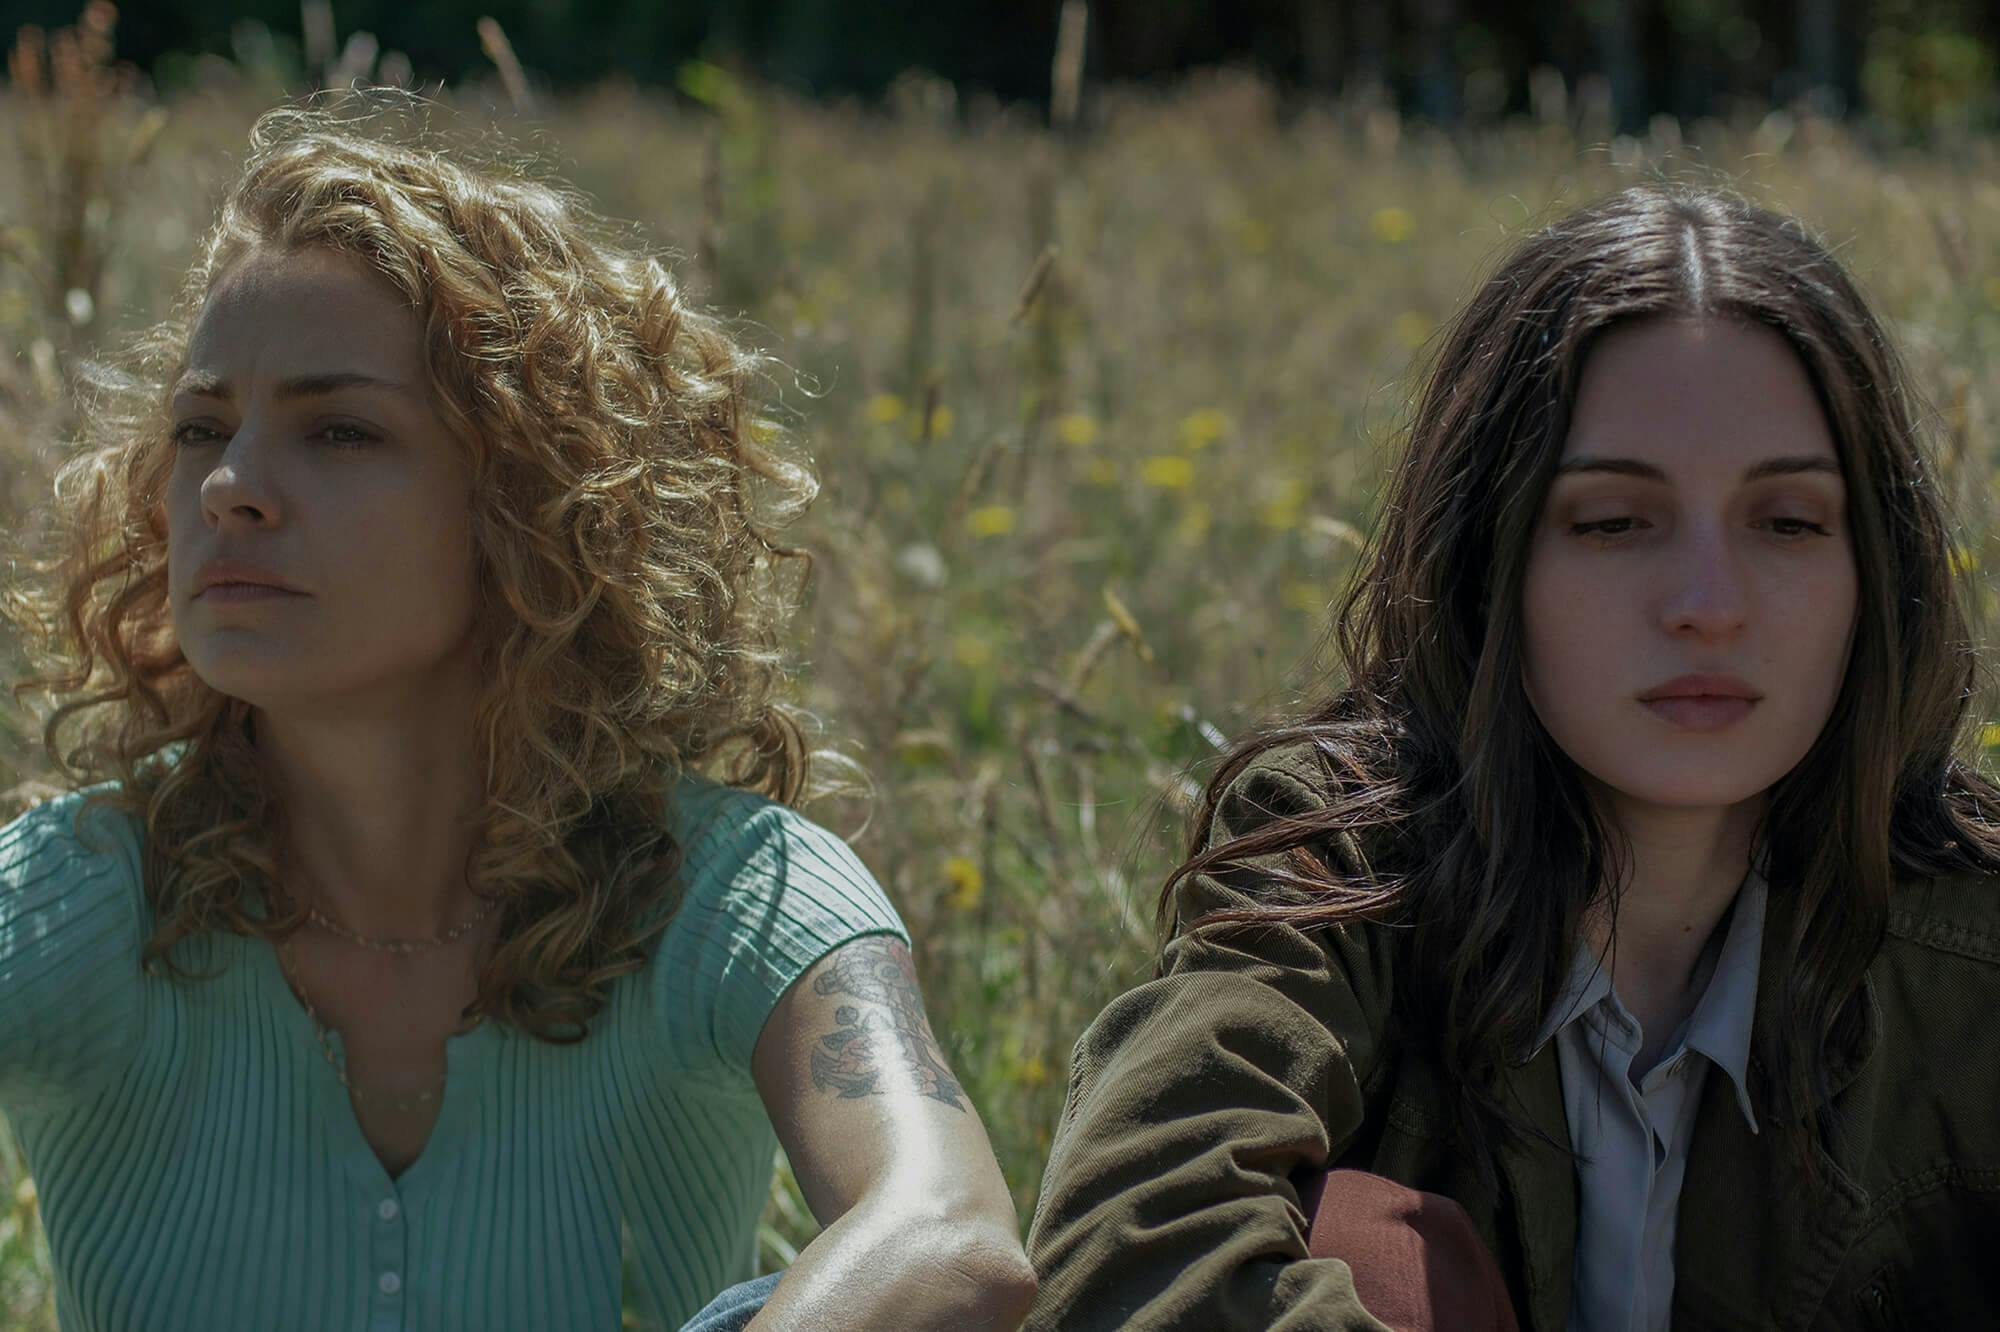 Carola (Dolores Fonzi) y Amanda (María Valverde) se sientan en un campo de flores silvestres y pasto. Carola usa una camisa abotonada color turquesa y Amanda una chaqueta de color oscuro.